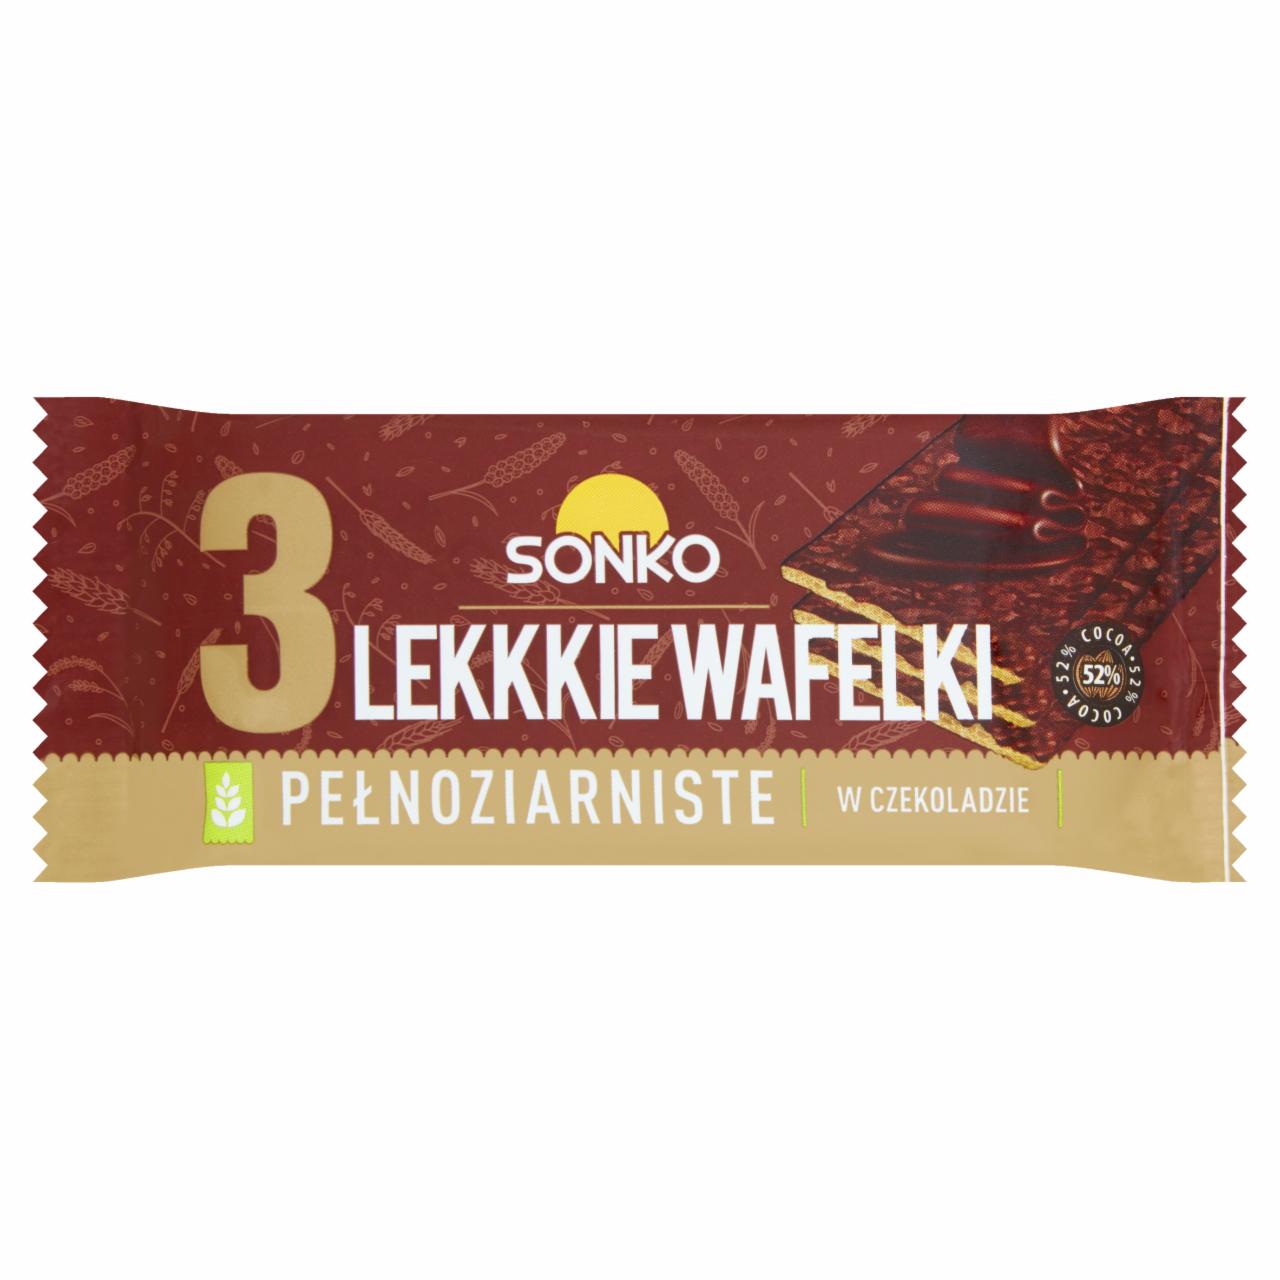 Zdjęcia - Sonko Lekkie wafelki pełnoziarniste w ciemnej czekoladzie 36 g (3 sztuki)